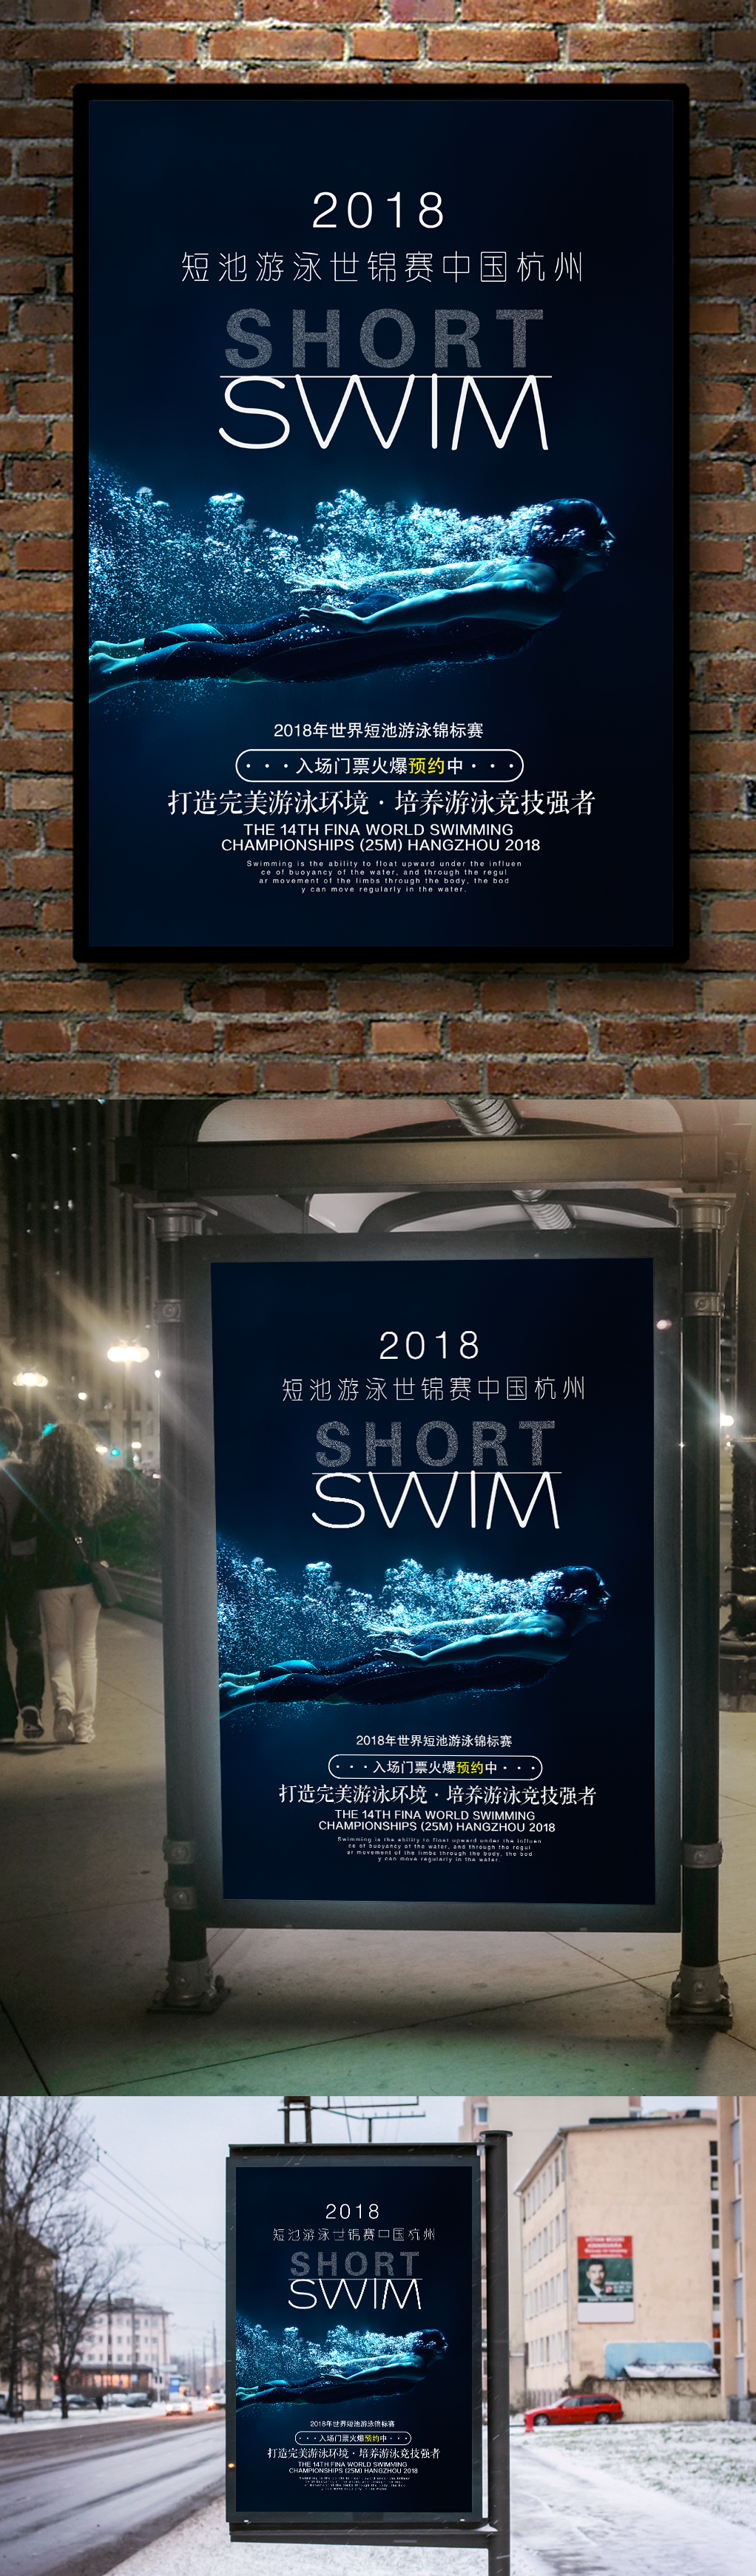 游泳比赛宣传海报